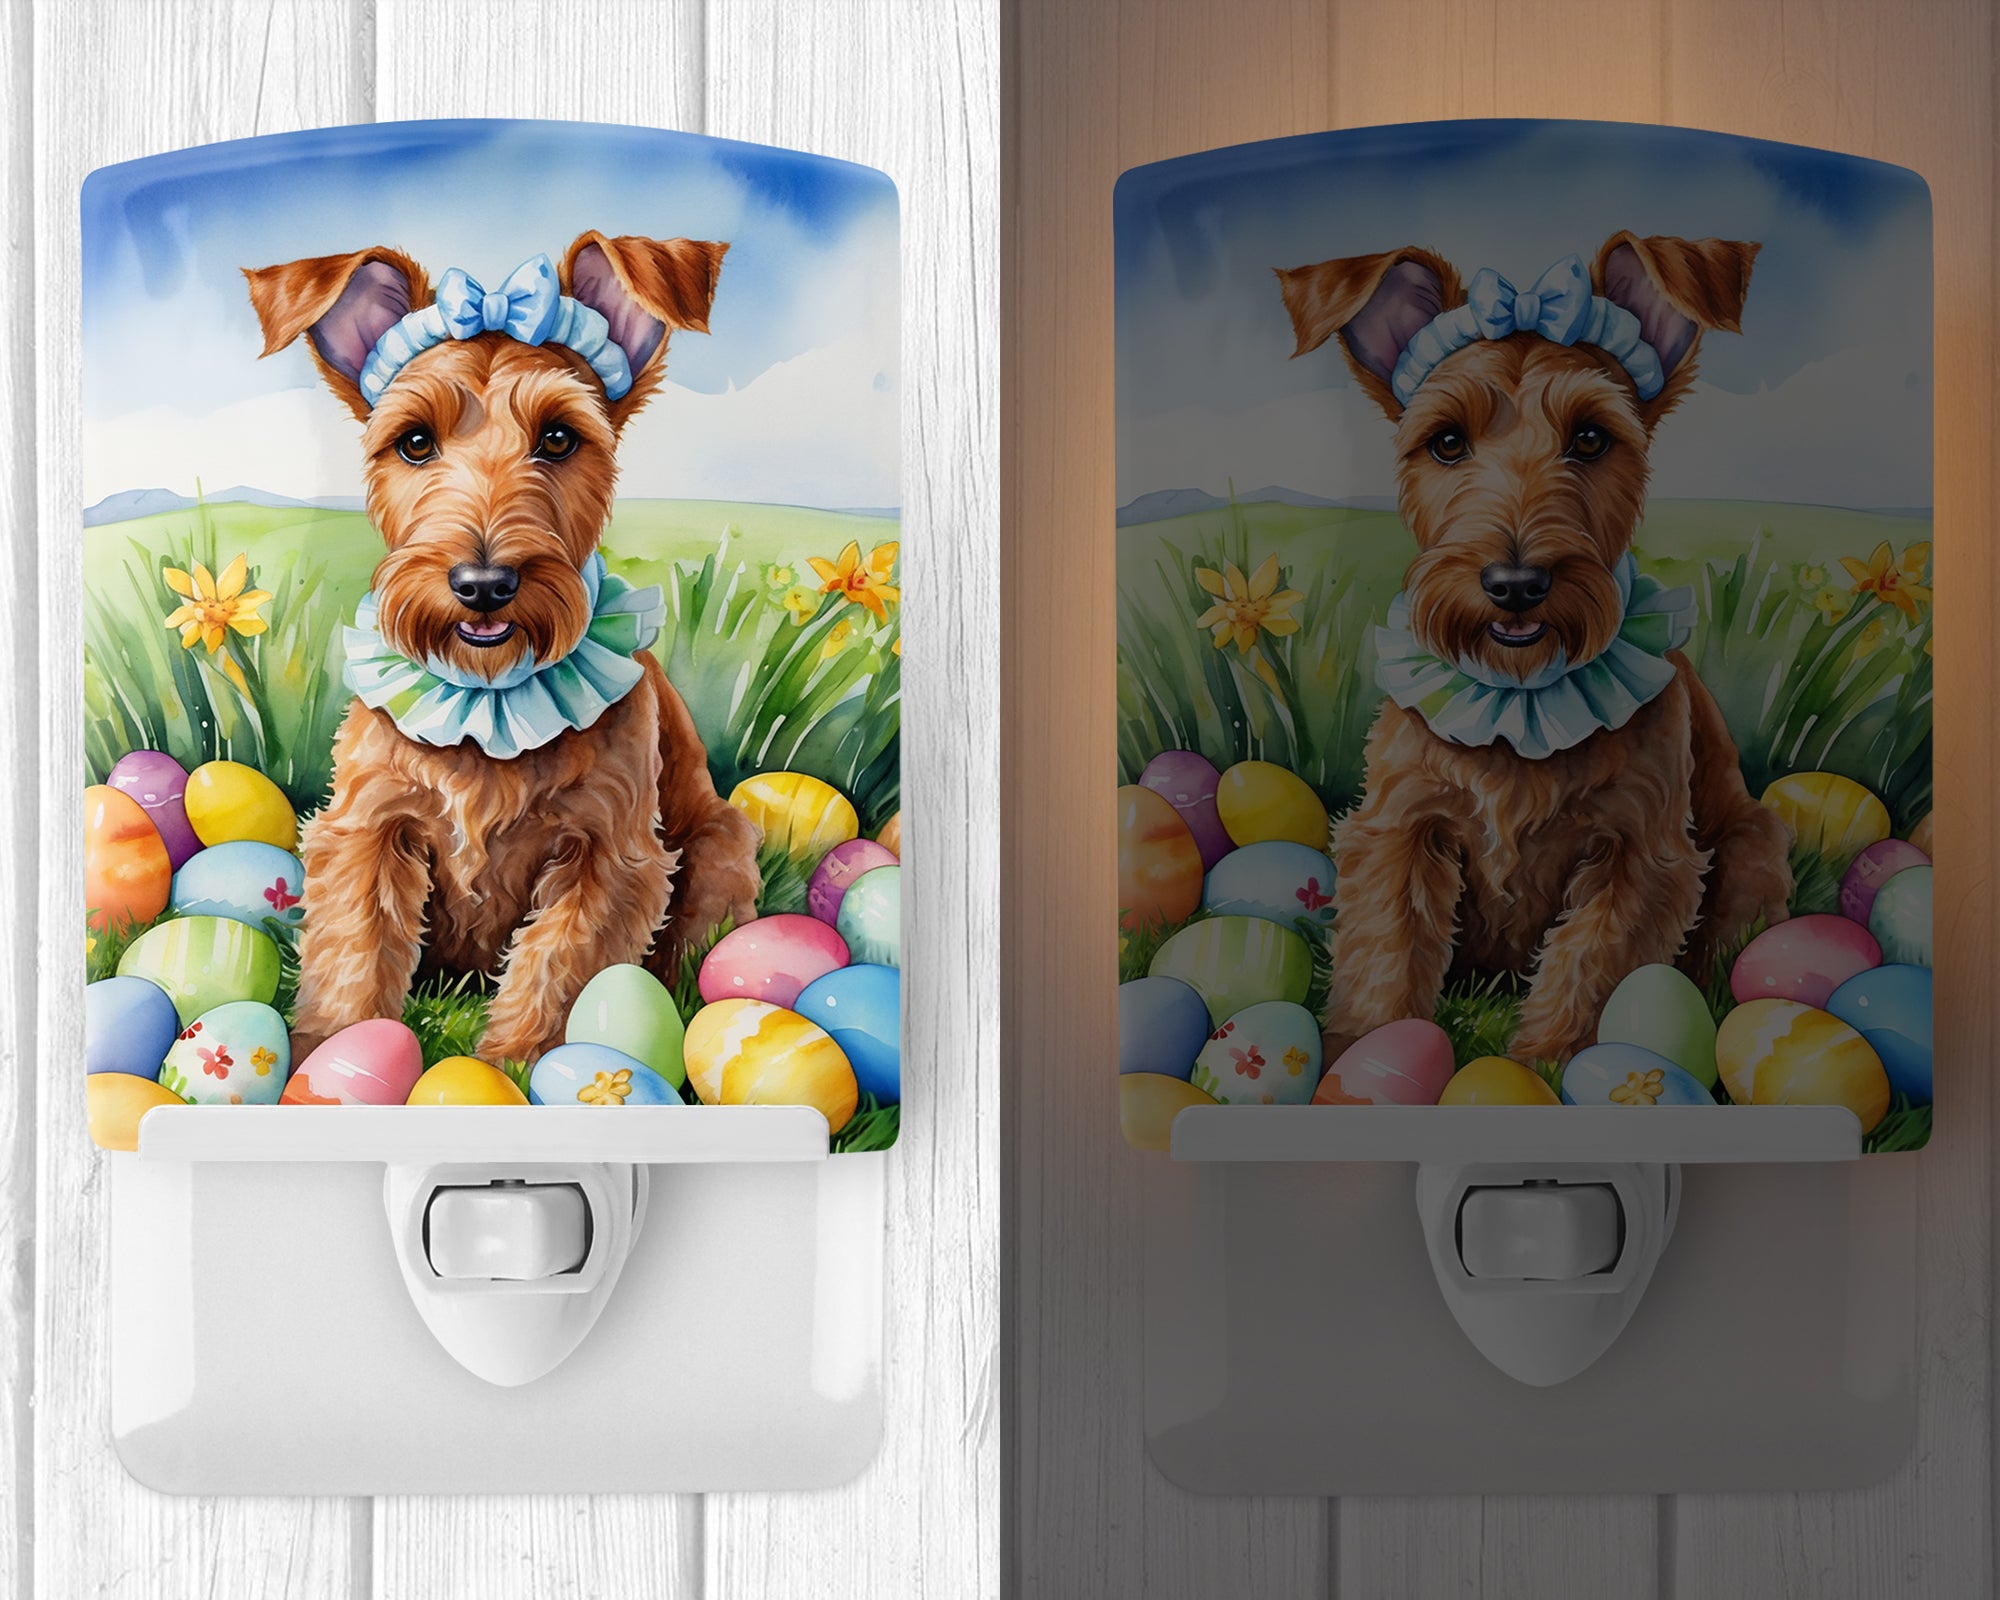 Buy this Irish Terrier Easter Egg Hunt Ceramic Night Light